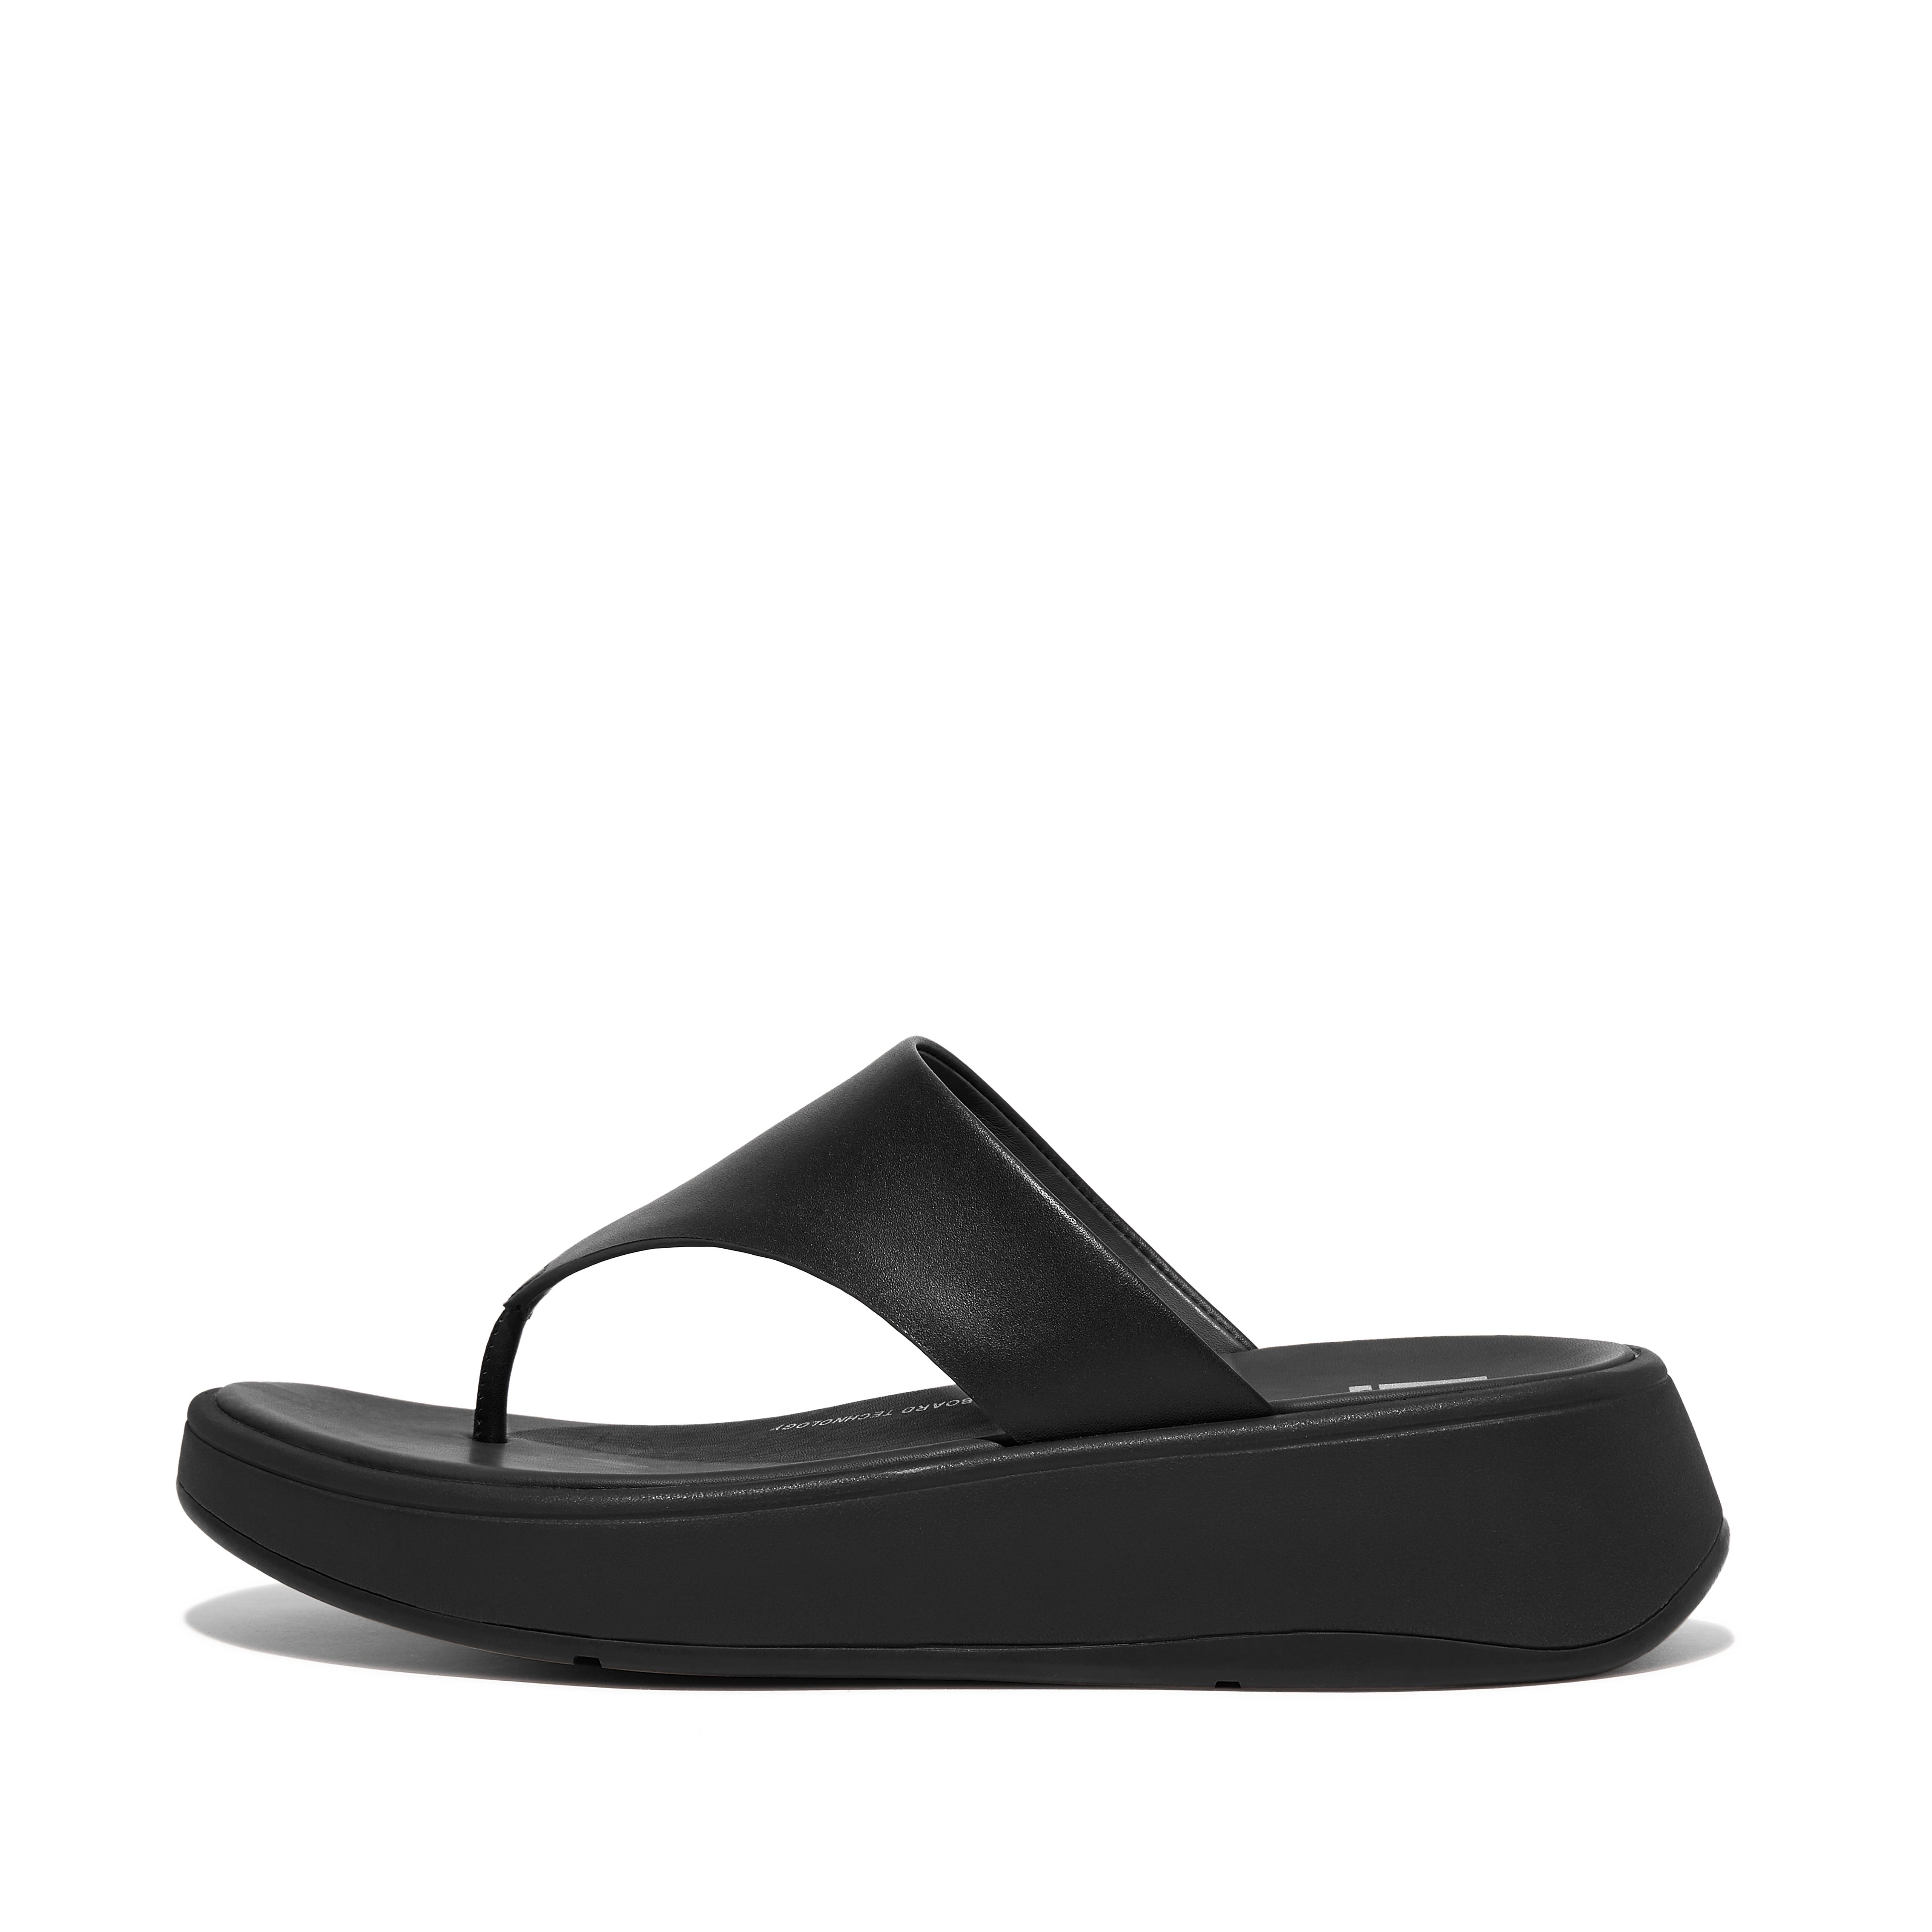 핏플랍 샌들 Fitflop Leather Flatform Toe-Post Sandals,All Black